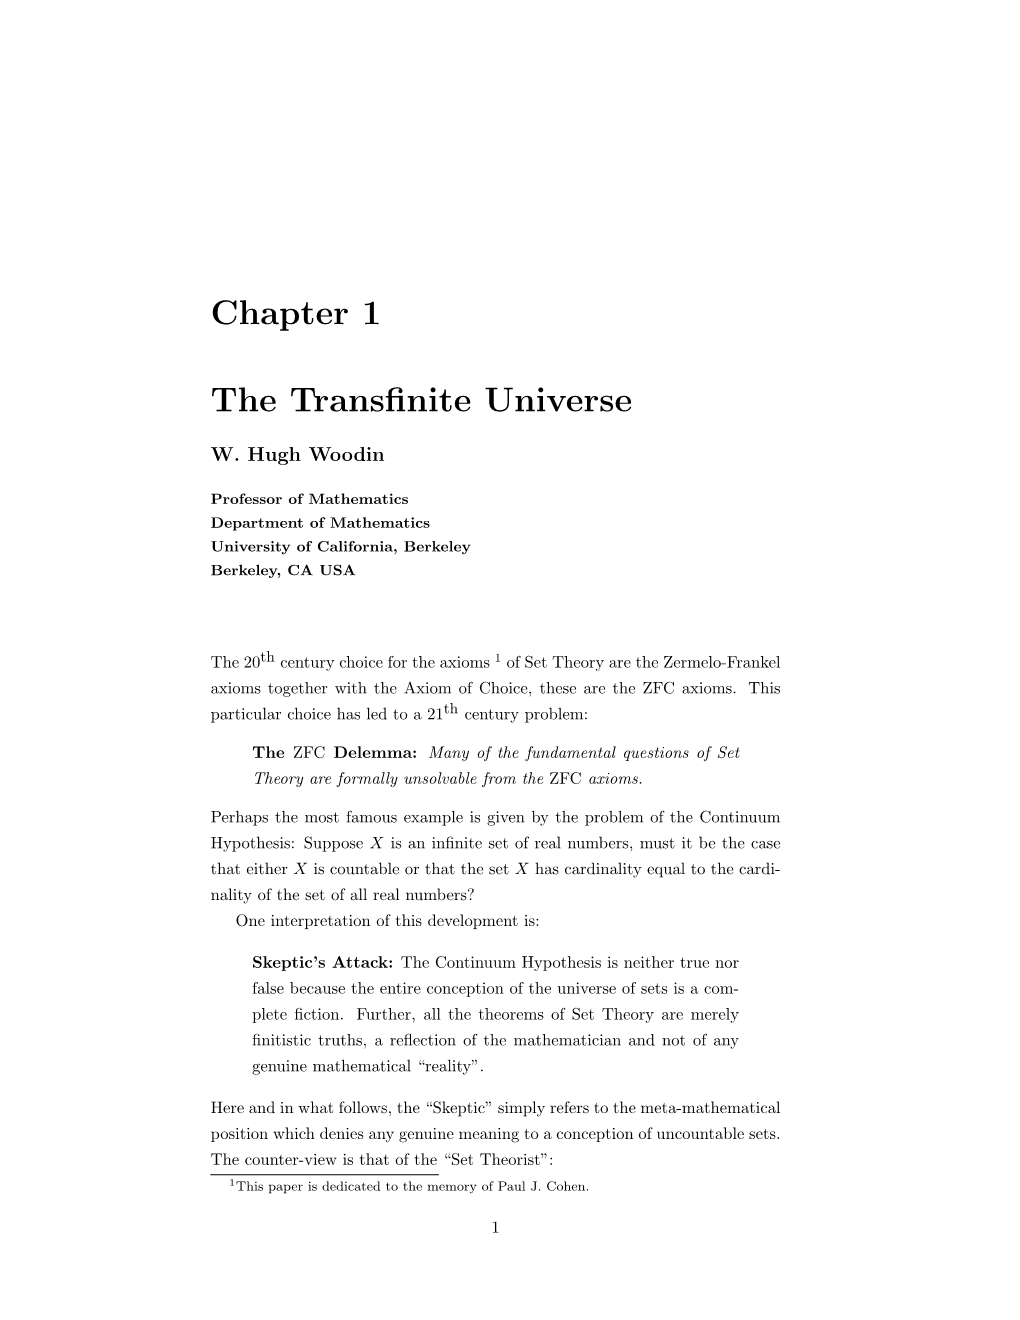 The Transfinite Universe